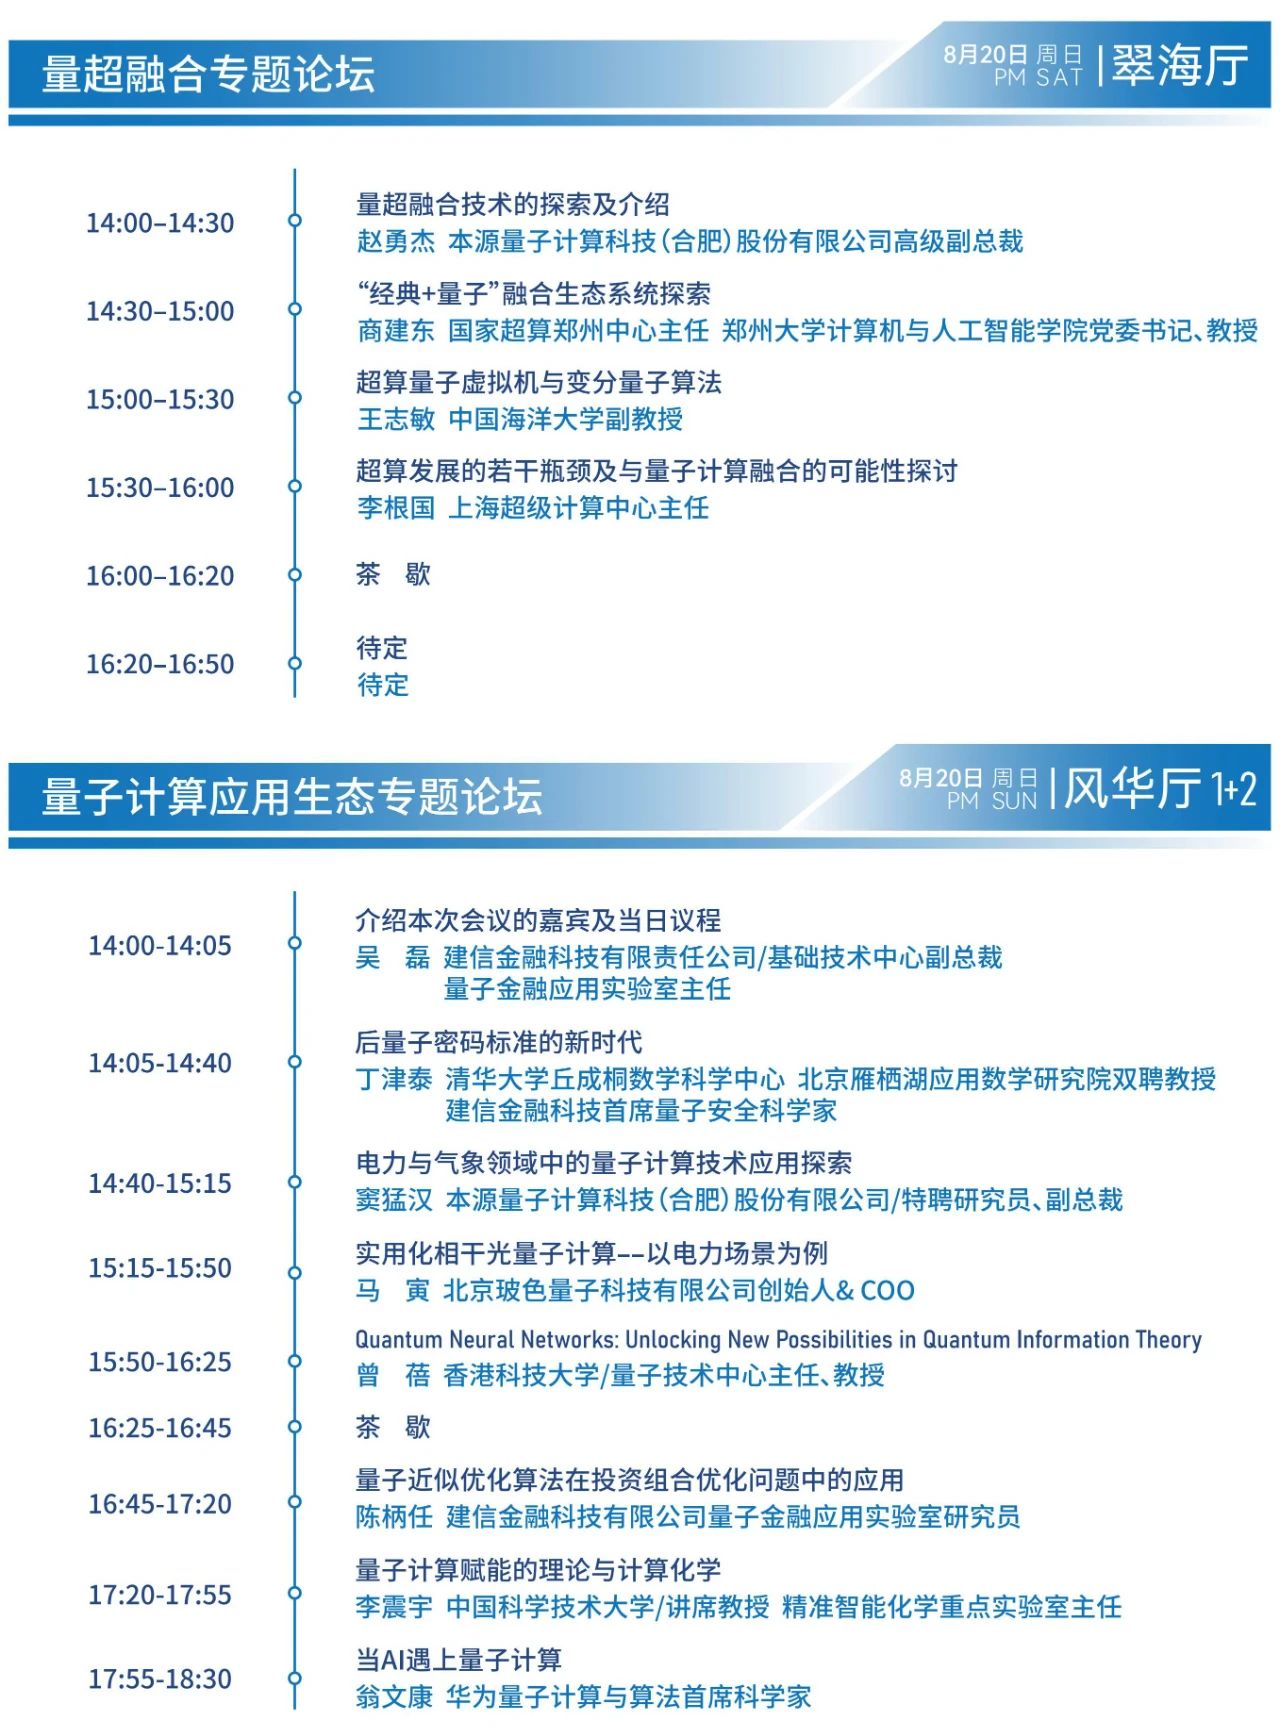 第二届CCF量子计算大会暨中国量子计算产业峰会(CQCC 2023)